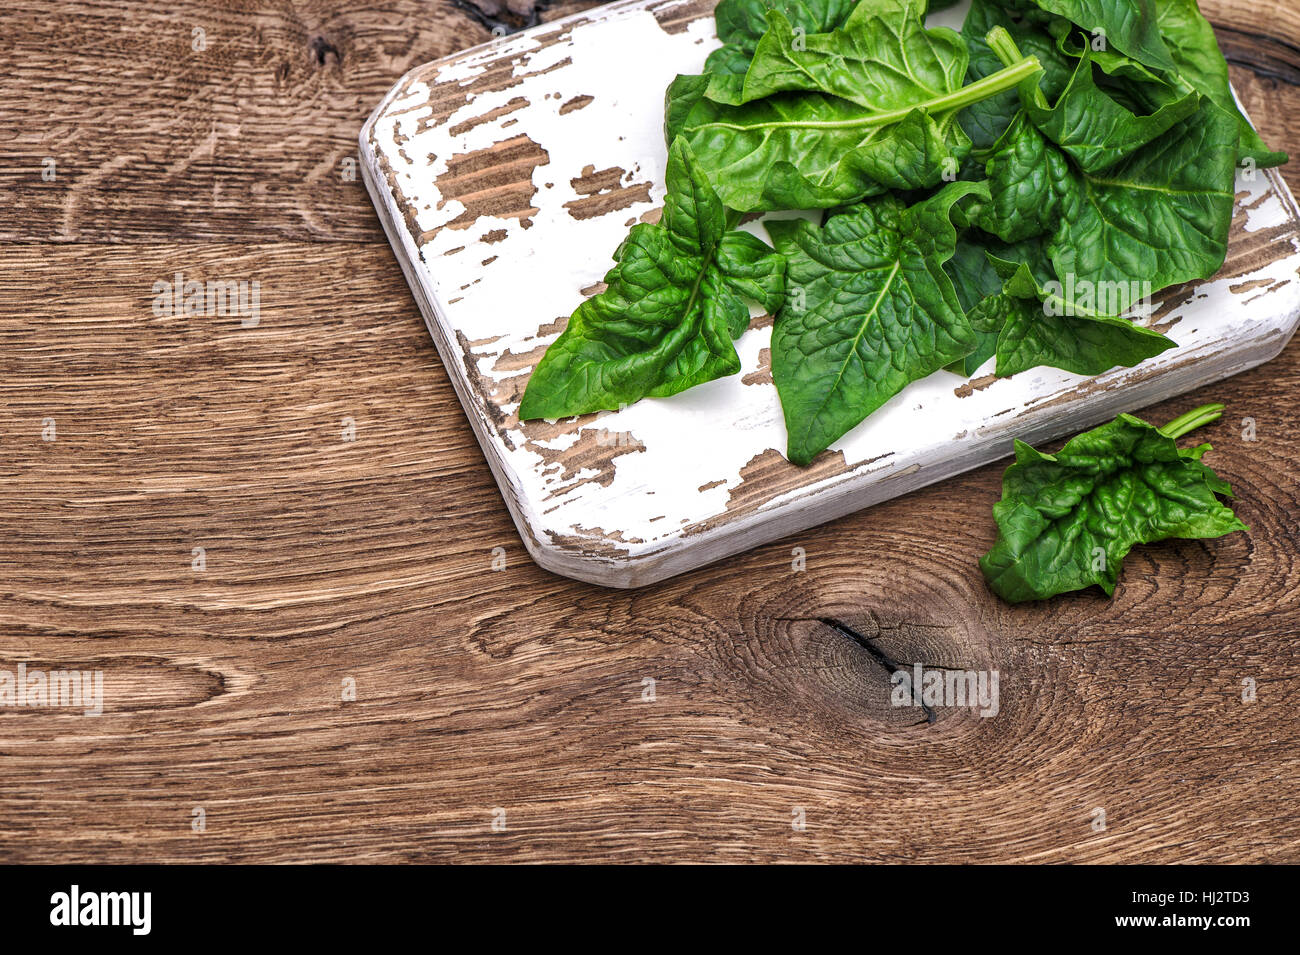 Épinards frais vert sur fond de cuisine rustique. Aliments biologiques sains Banque D'Images